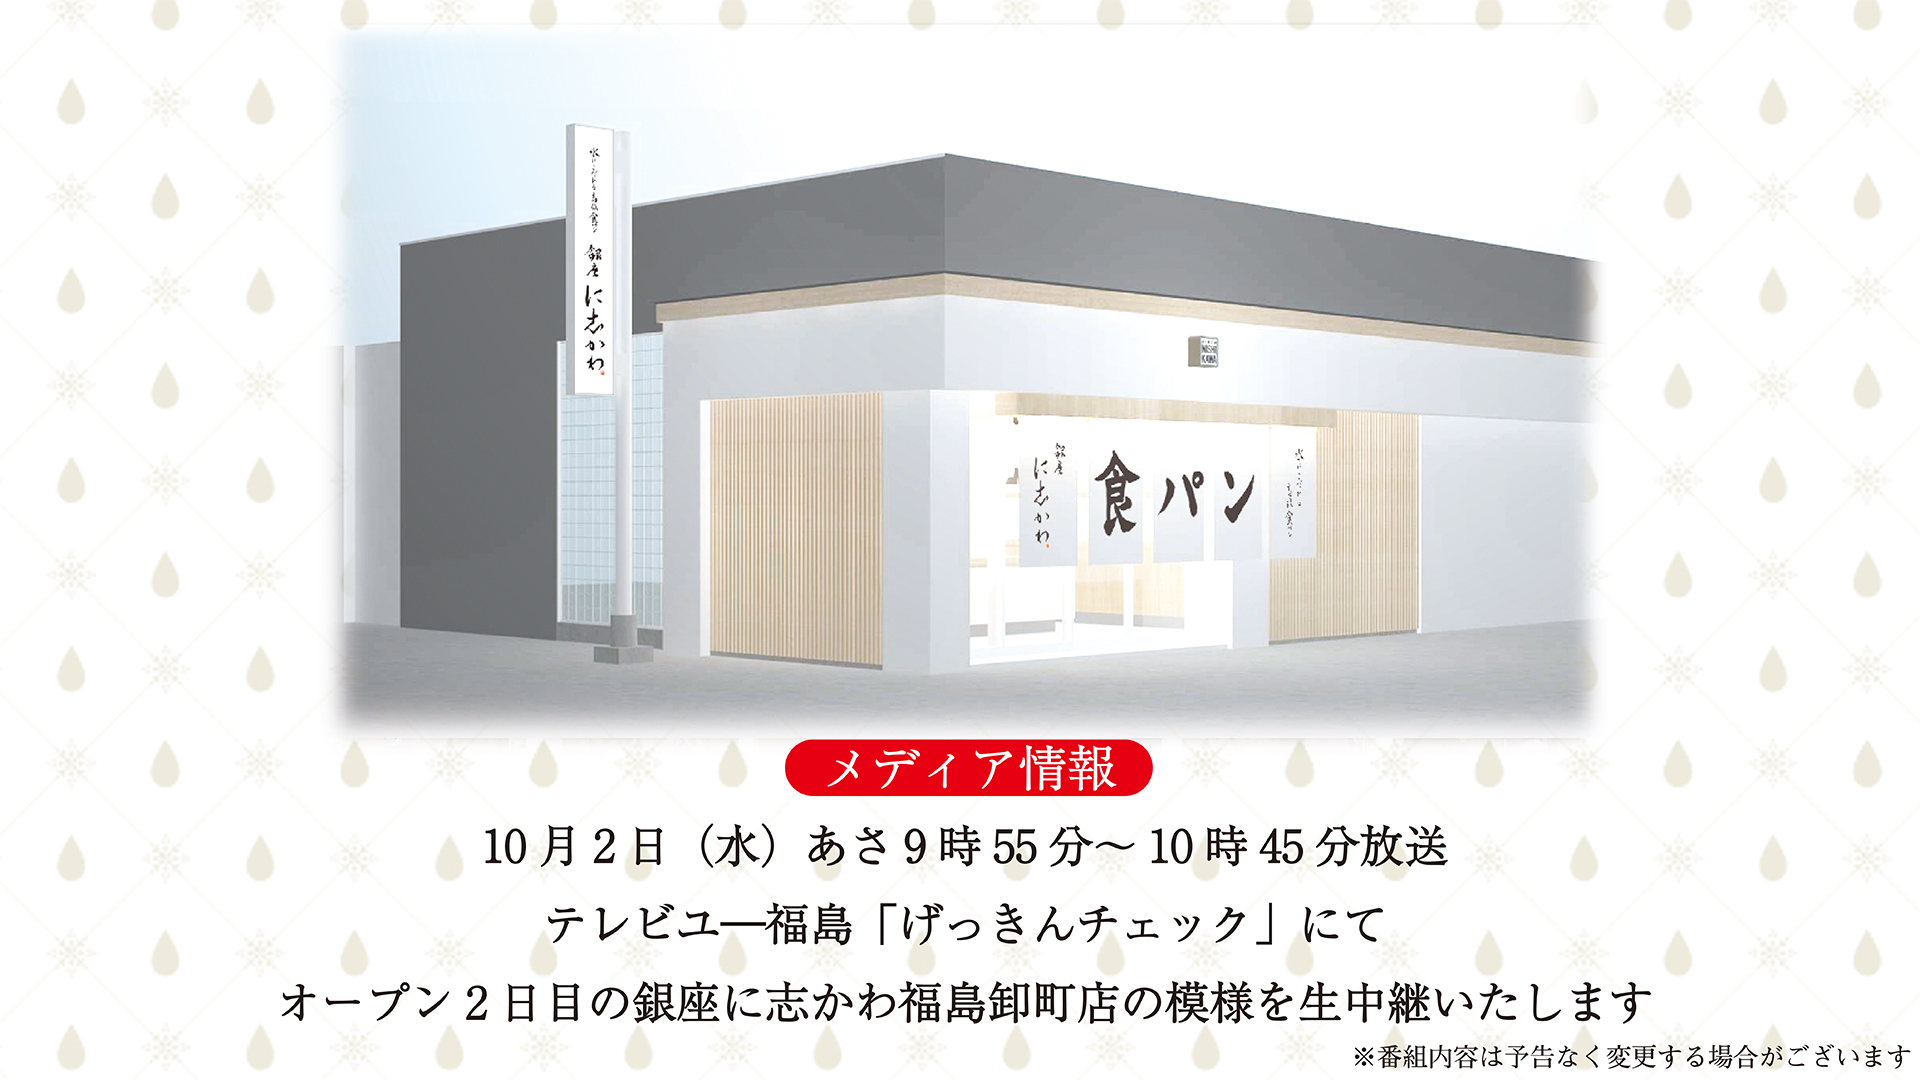 10月2日 水 テレビユ 福島 げっきんチェック にてオープン2日目の銀座に志かわ福島卸町店の模様を生中継いたします 銀座に志かわ